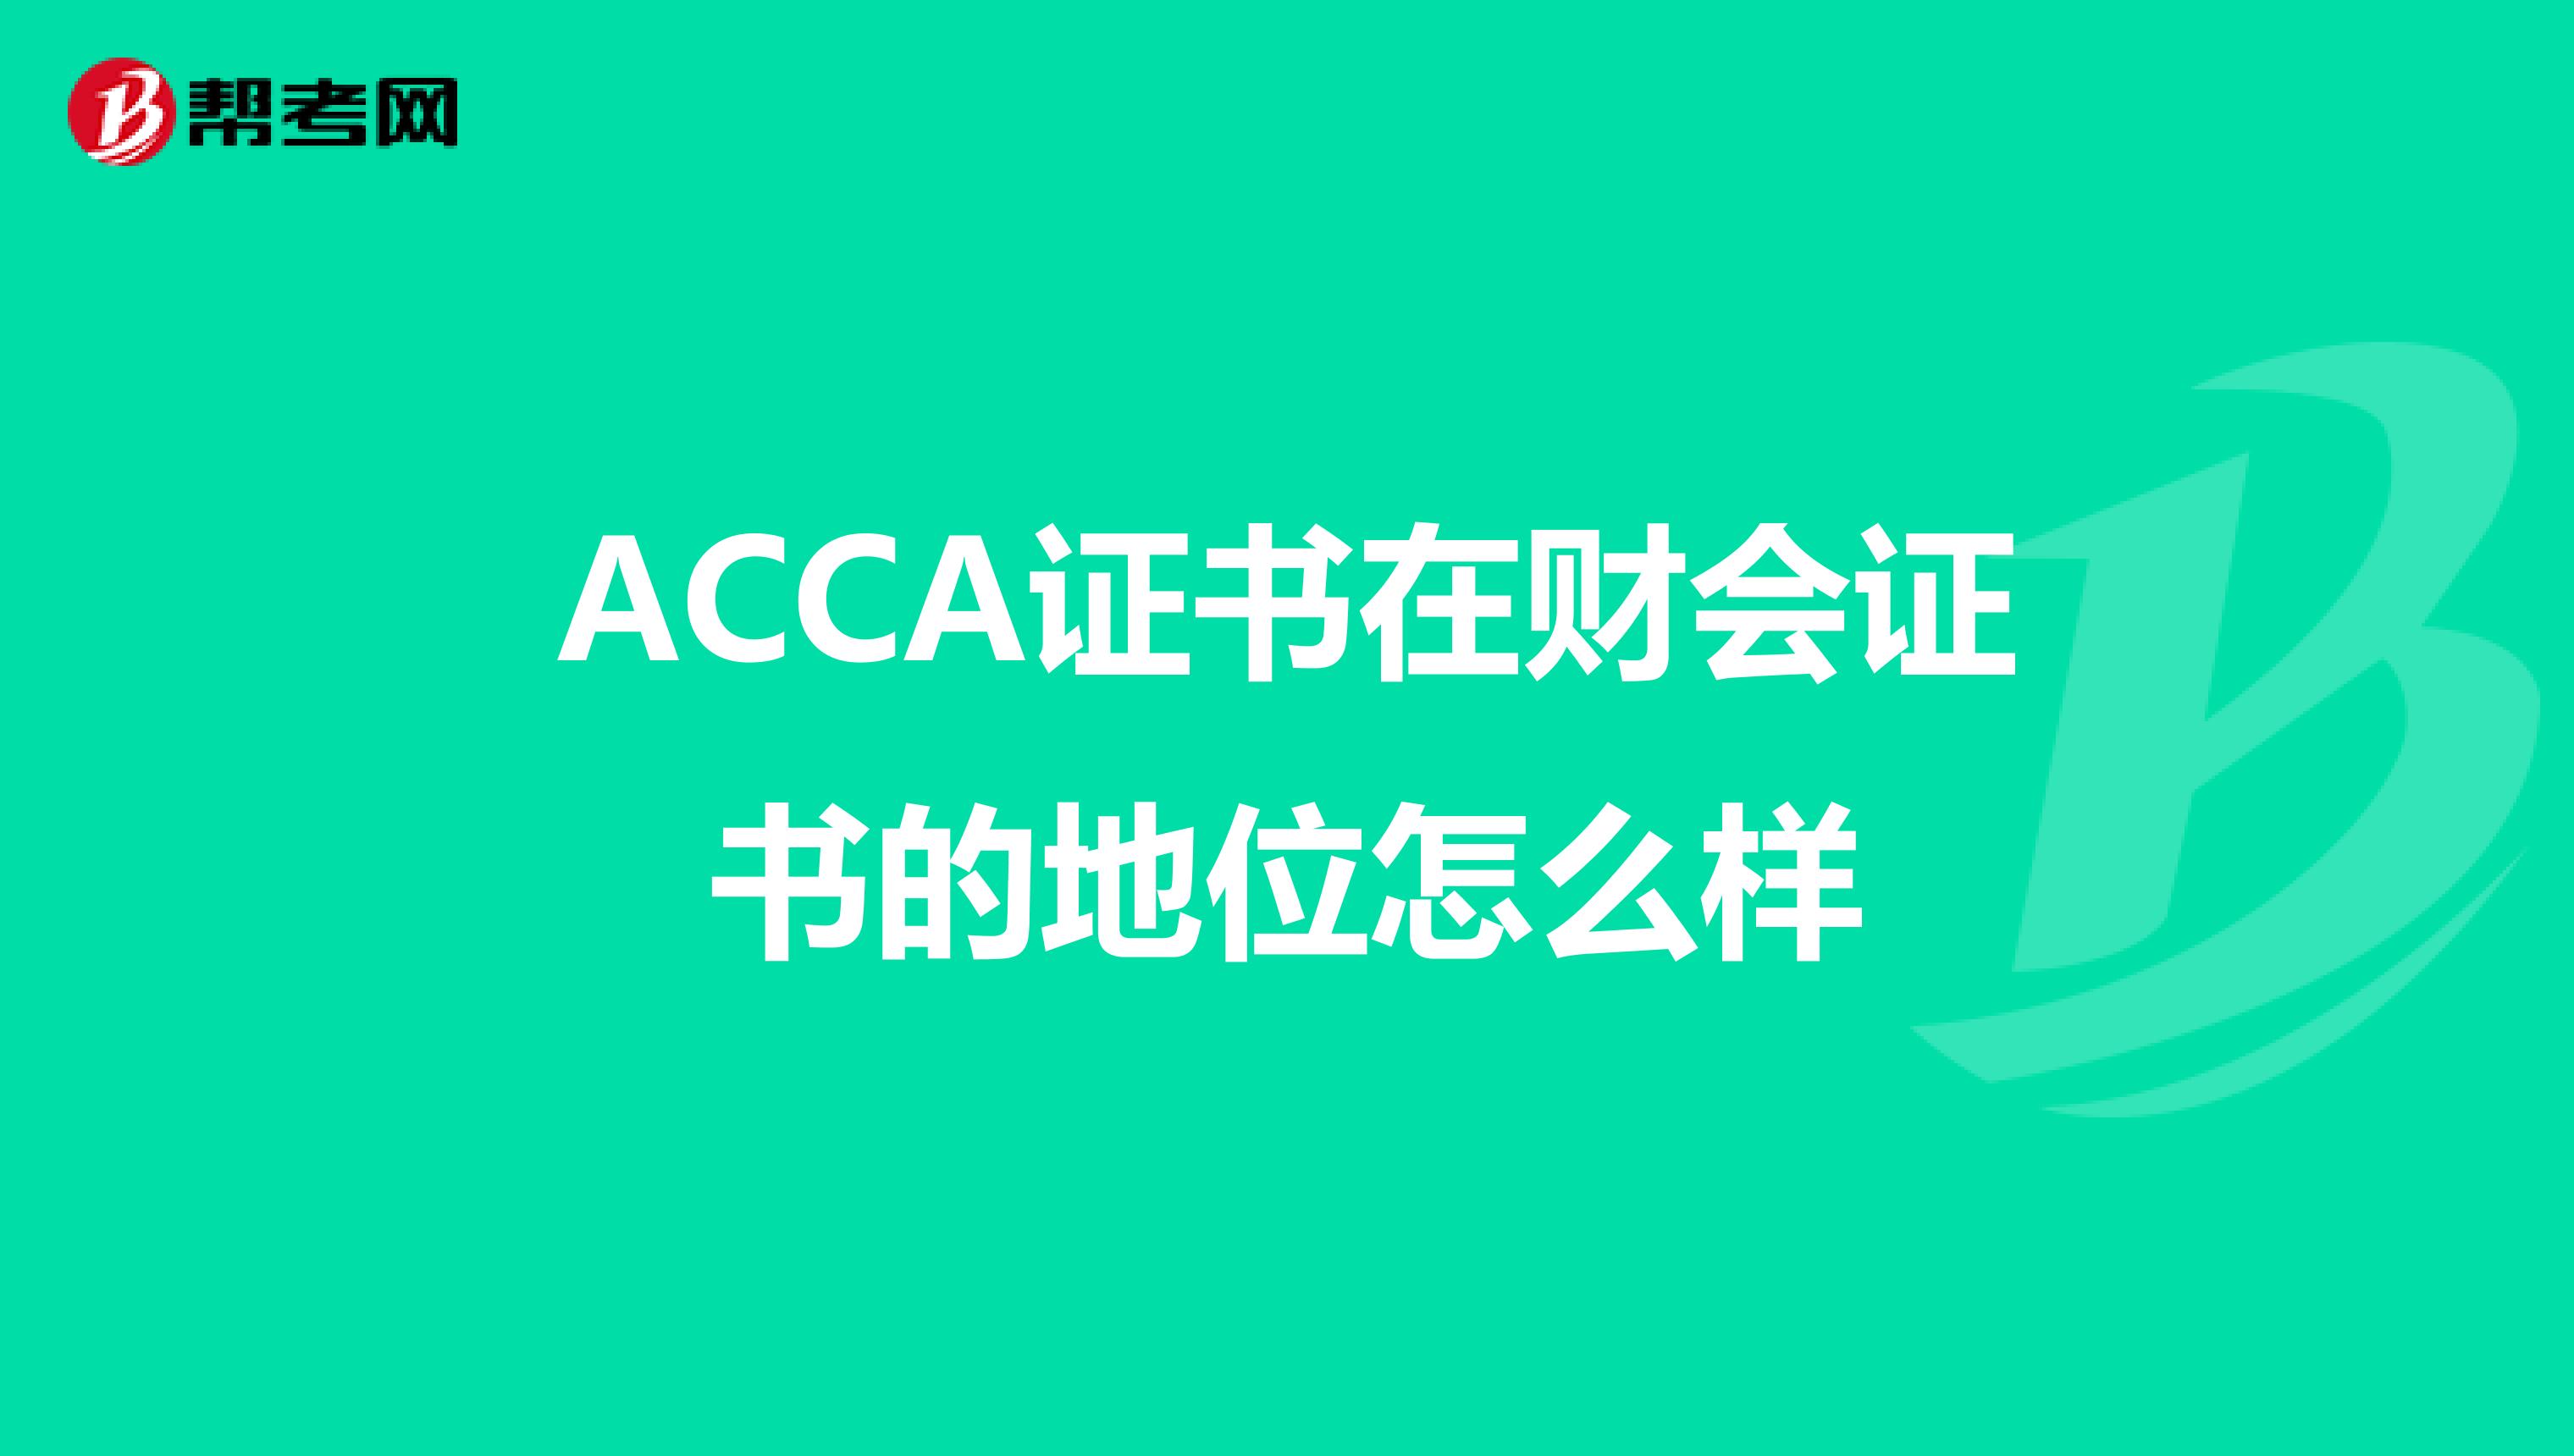 ACCA证书在财会证书的地位怎么样